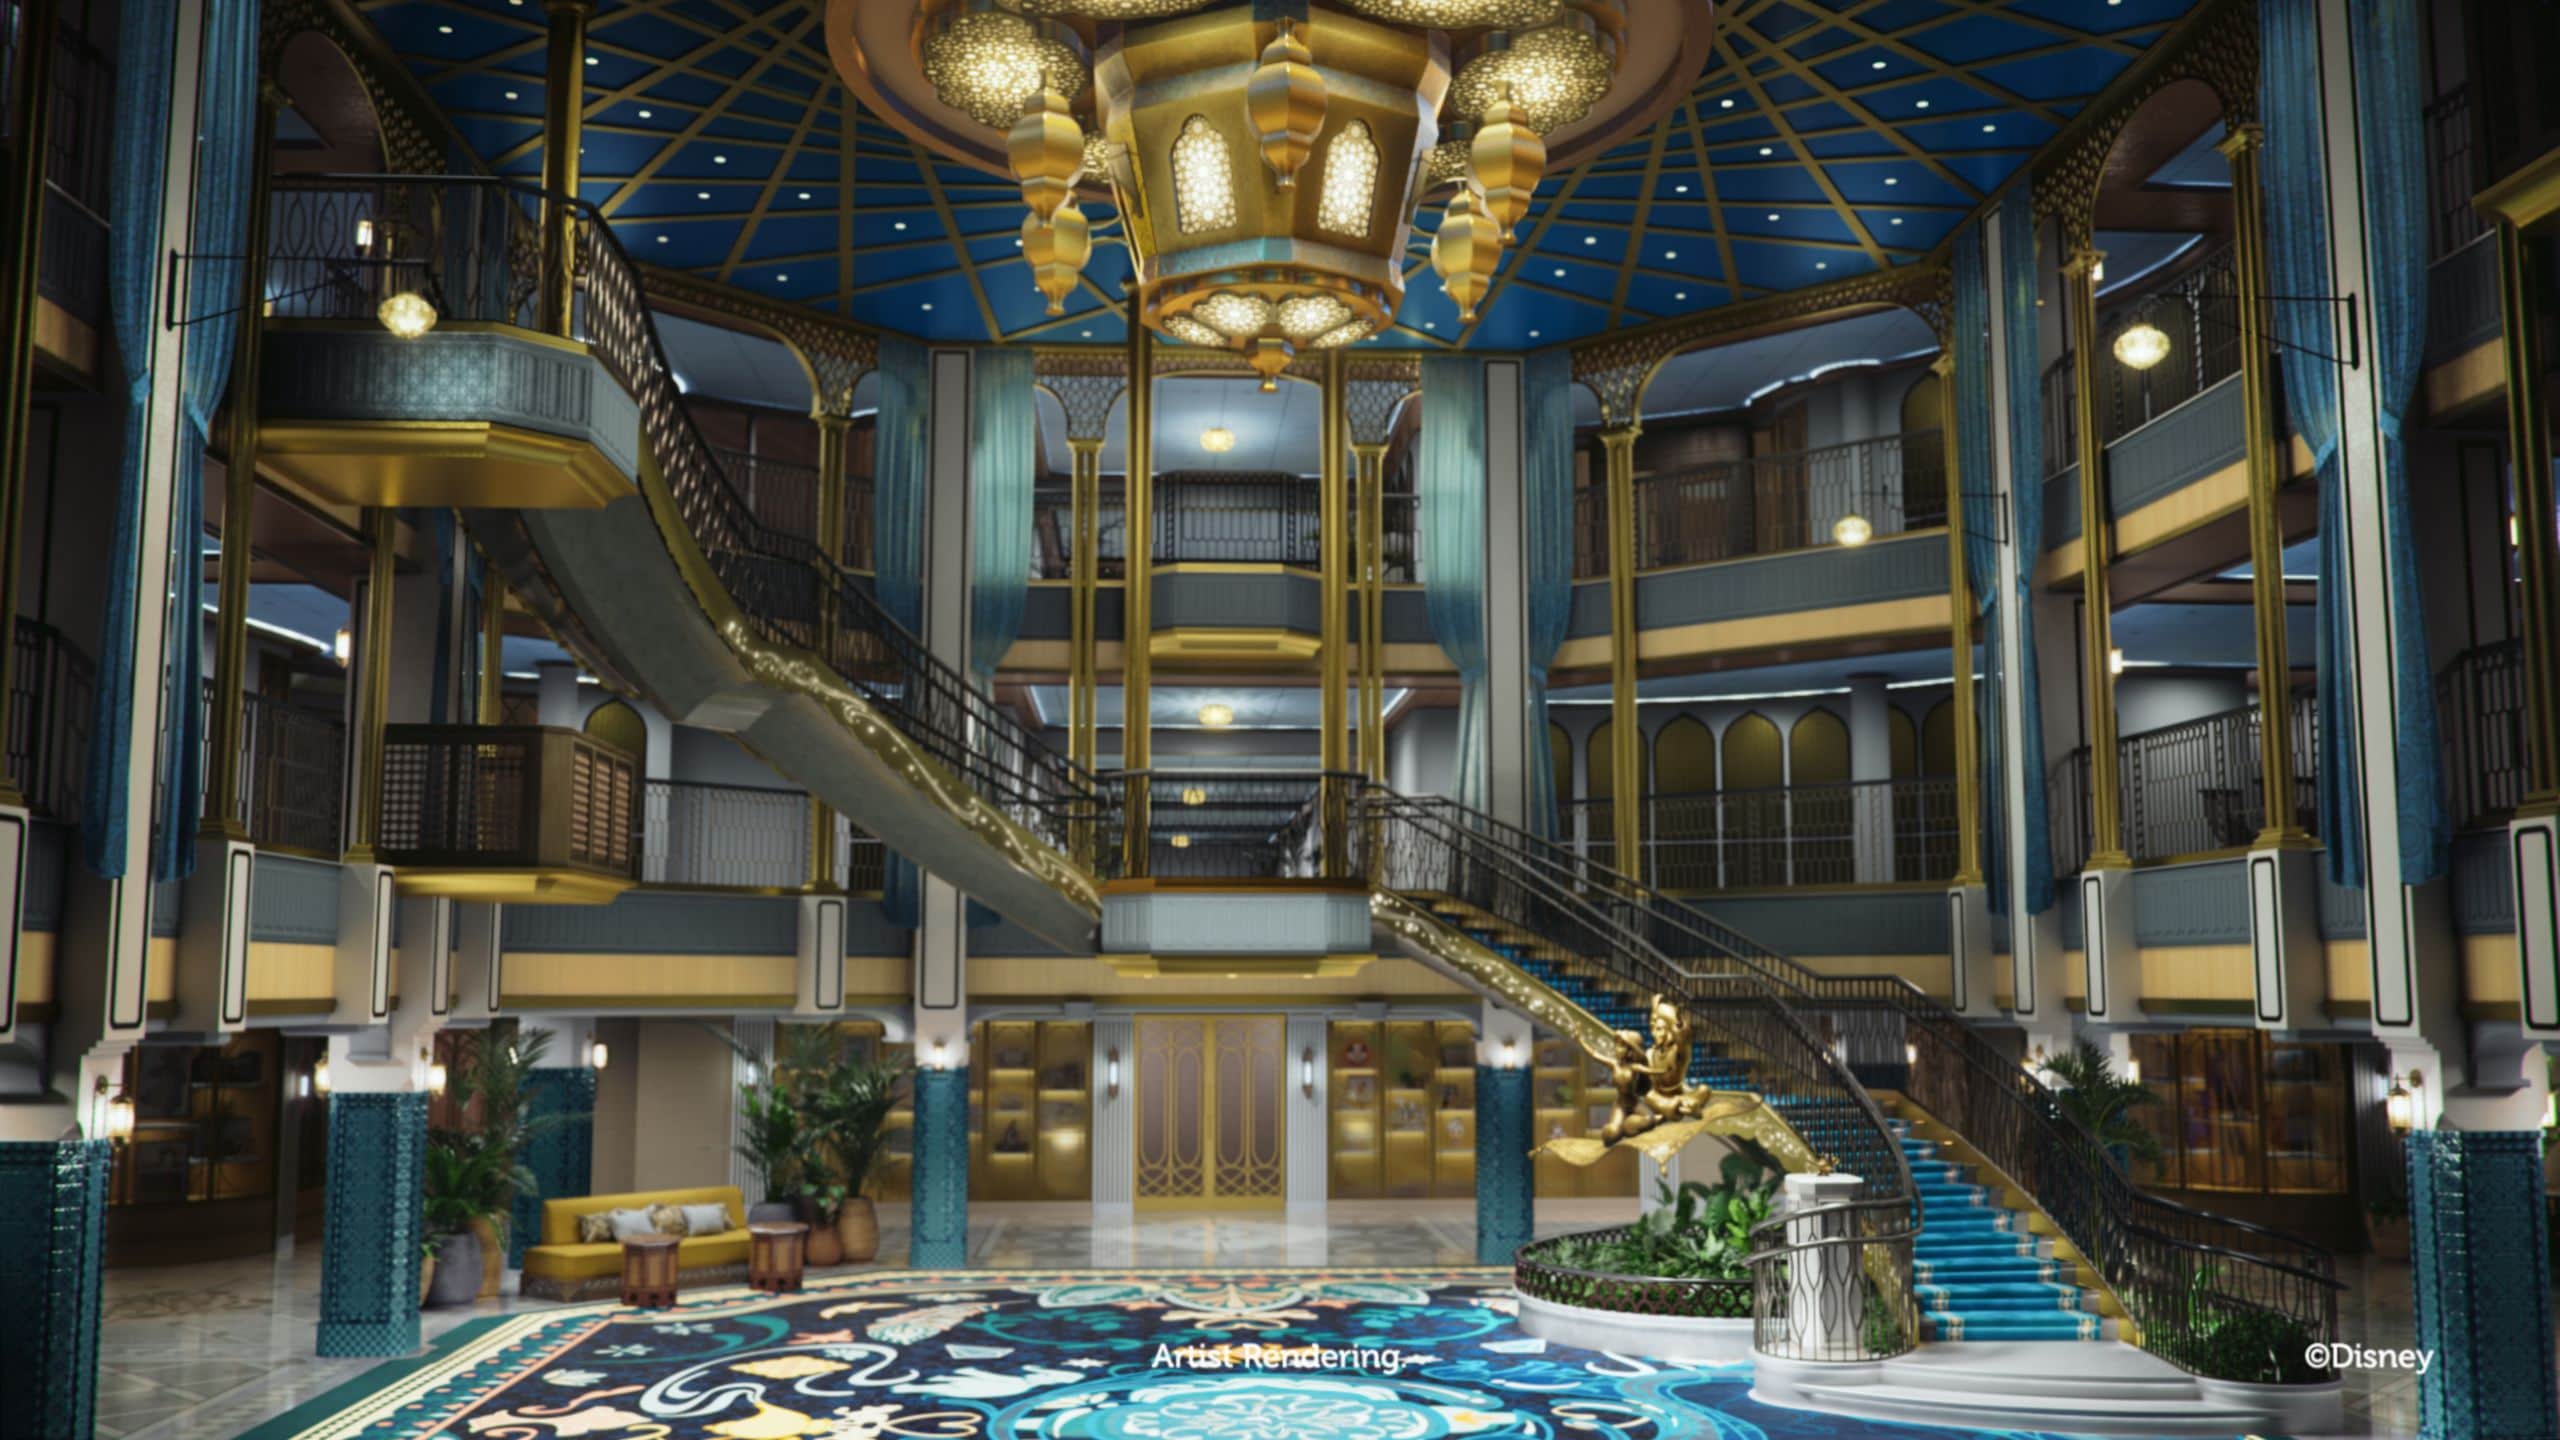 O Grande Salão do Disney Treasure revela colunas, um candelabro, uma estátua de Jasmine e Aladdin no tapete voador e uma escada em espiral que abrange 3 convés